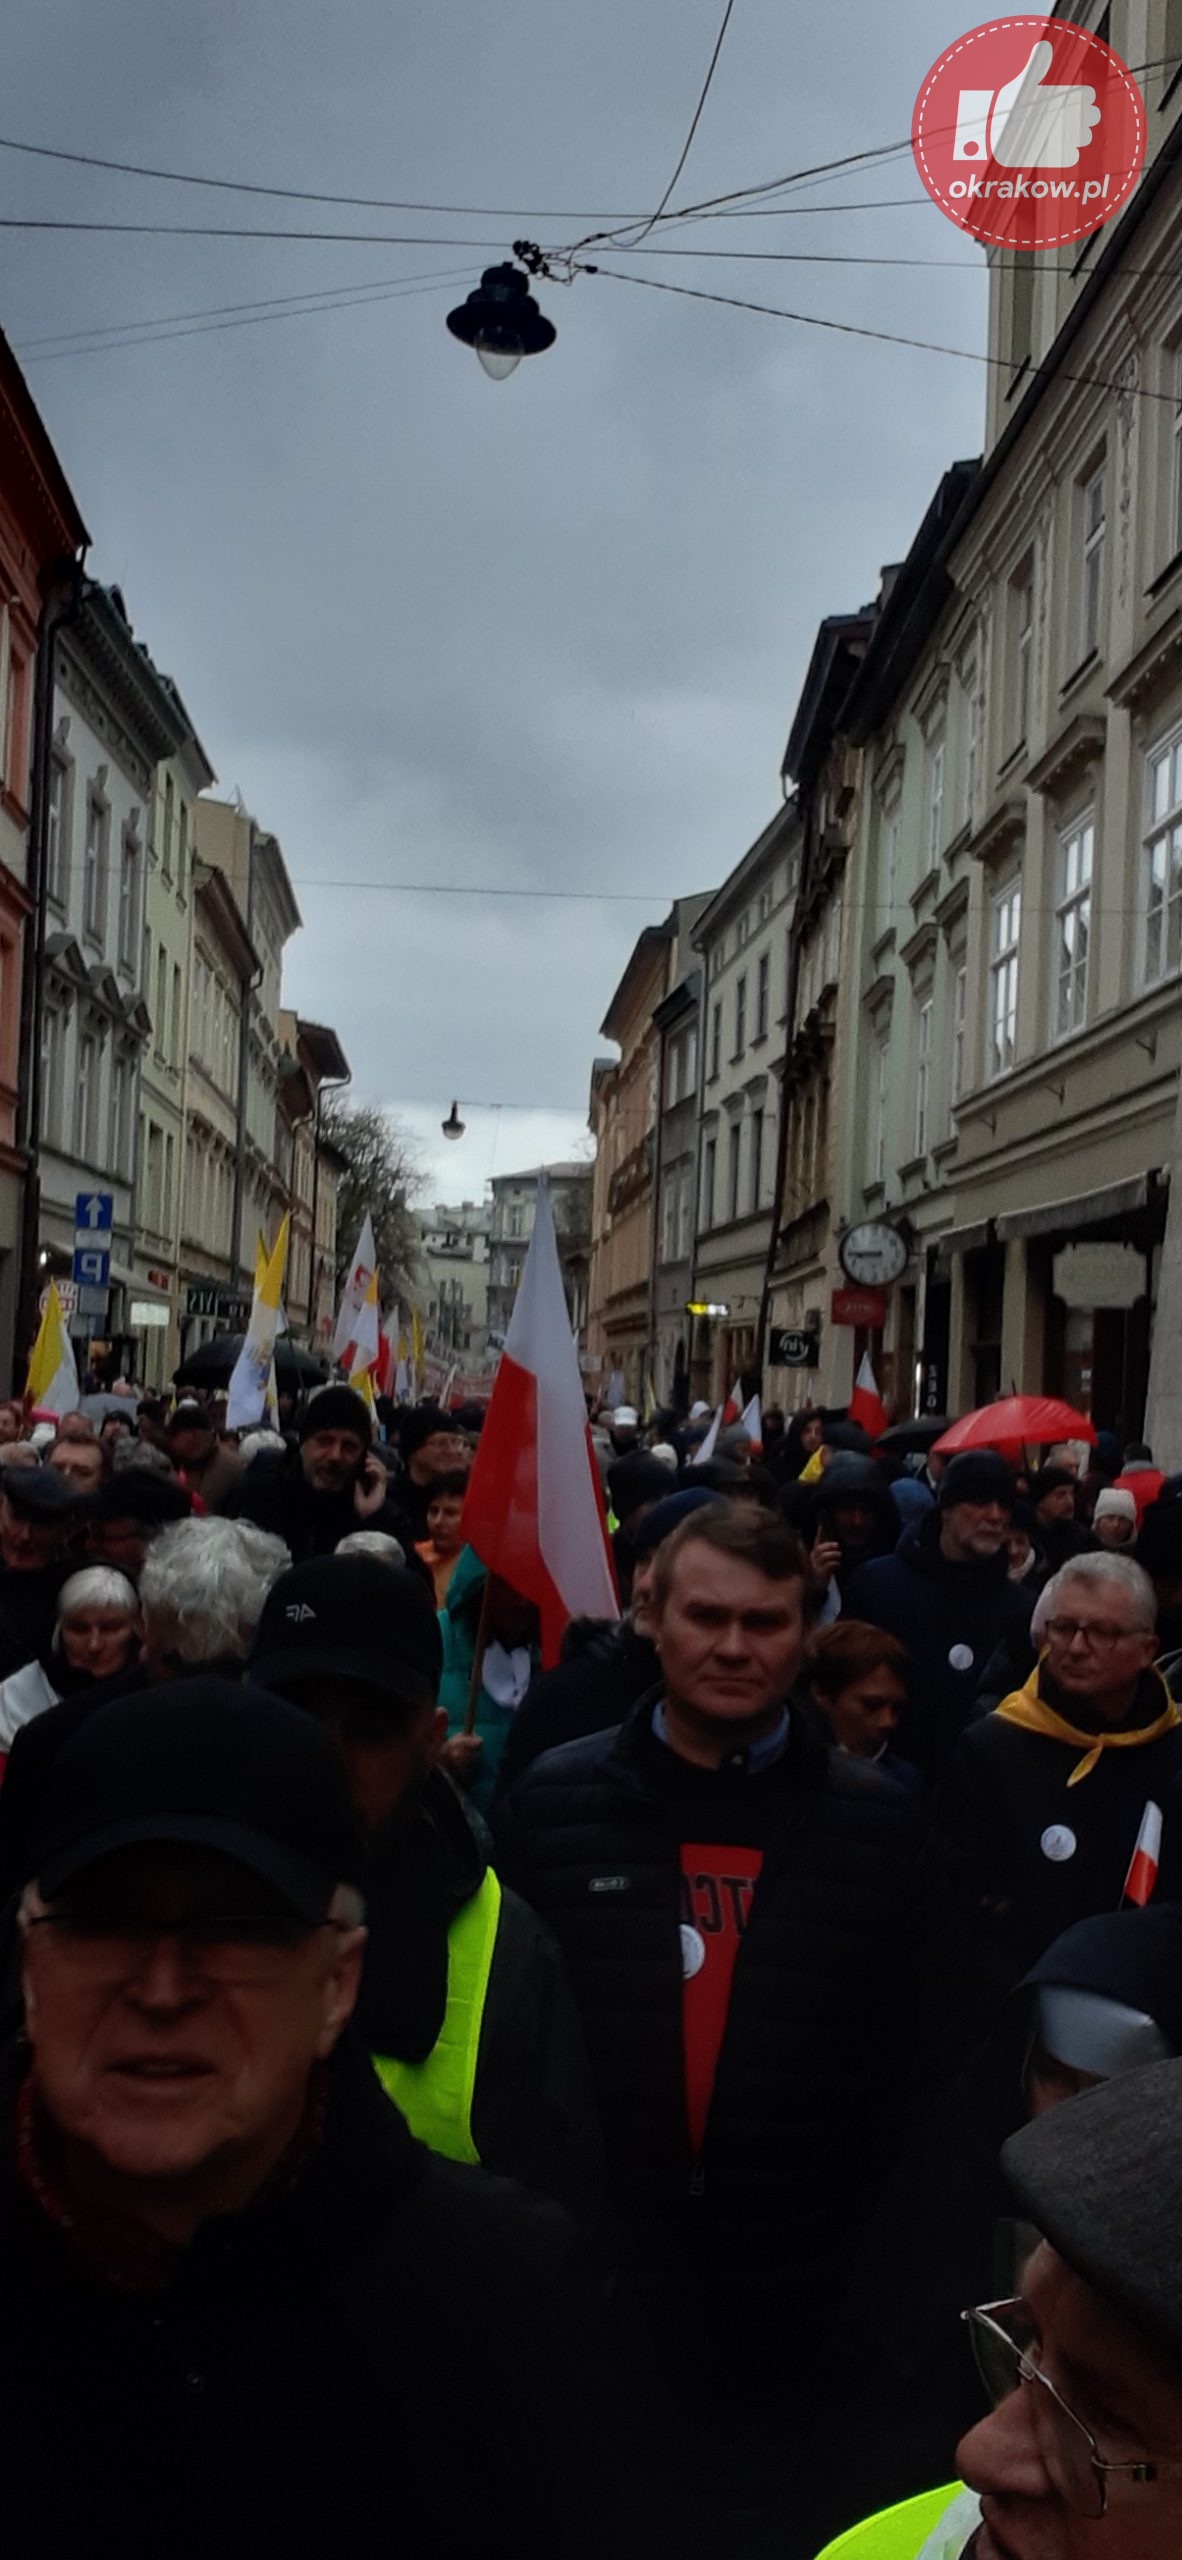 20230402 151550 scaled - Biały Marsz Papieski przeszedł ulicami Krakowa